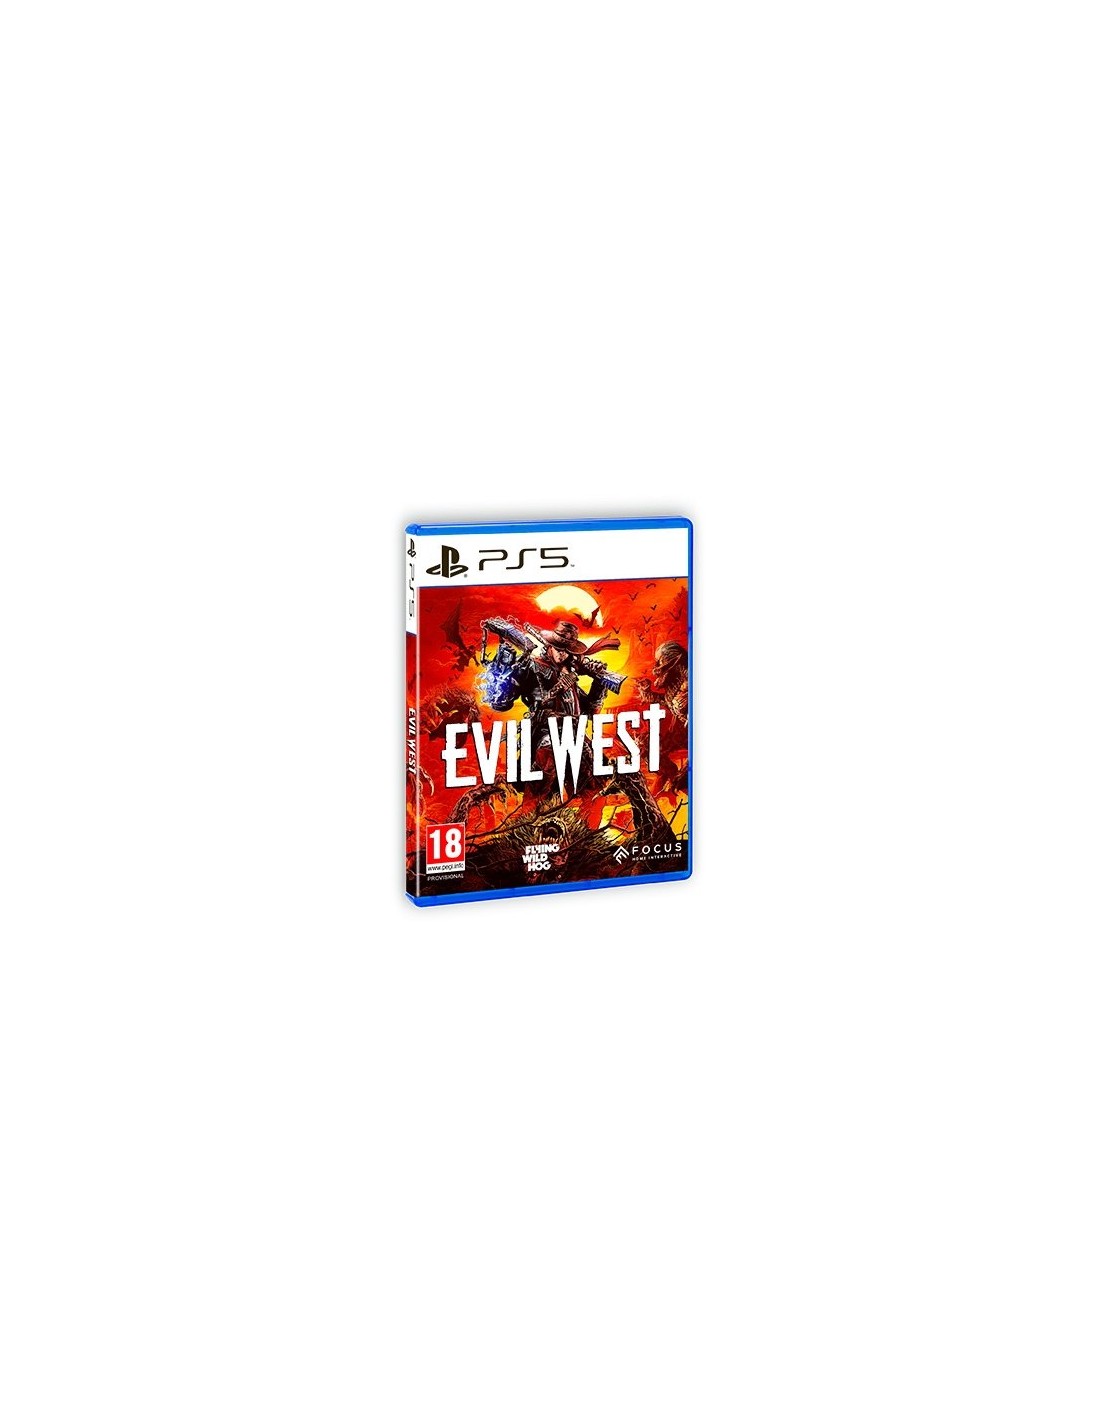 Evil West para PS5